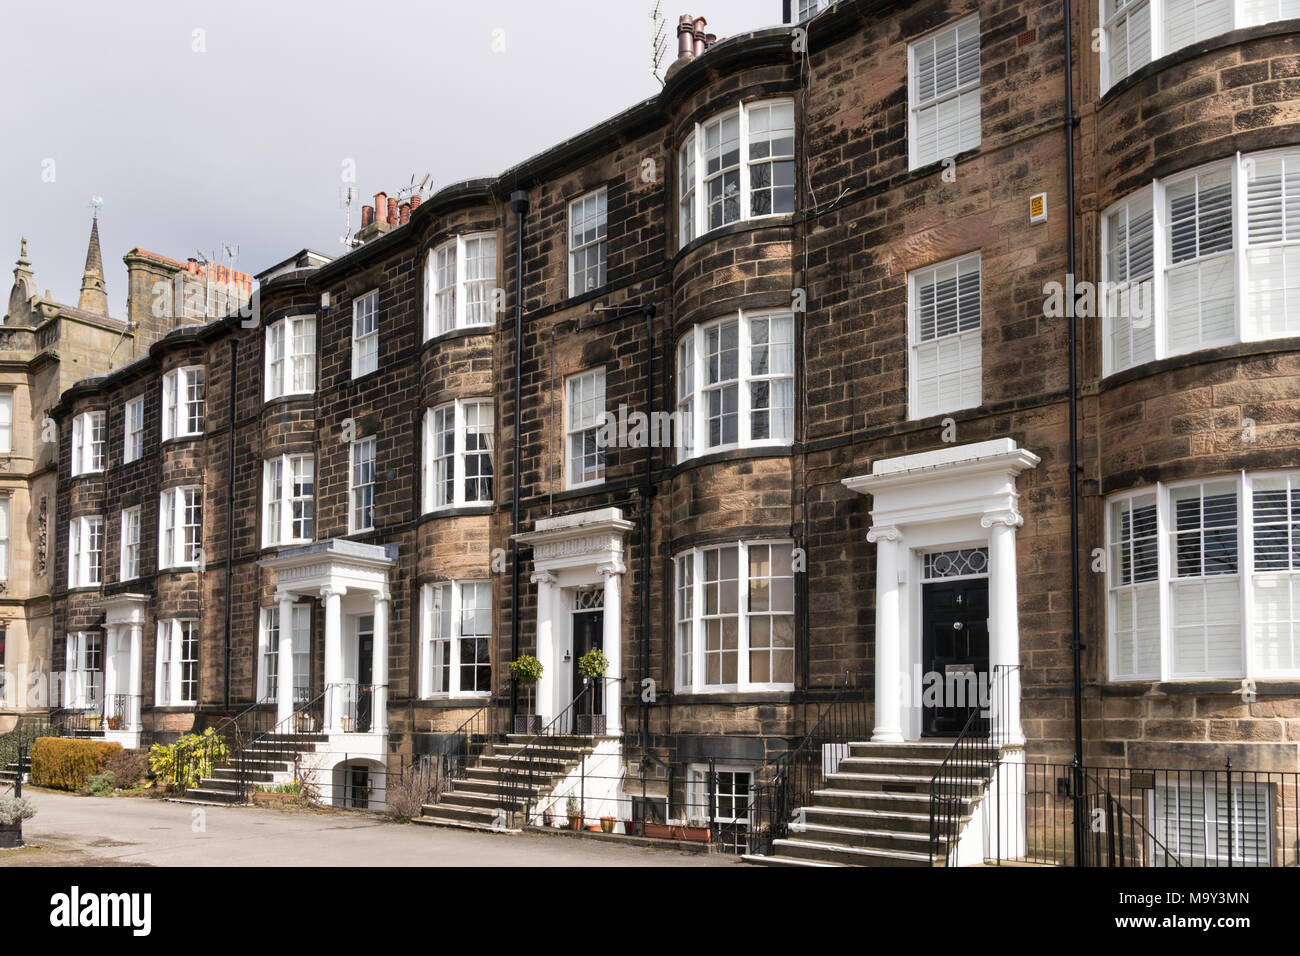 1-4 West Park, début du 19ème siècle abrite une terrasse, Harrogate, North Yorkshire, England, UK Banque D'Images